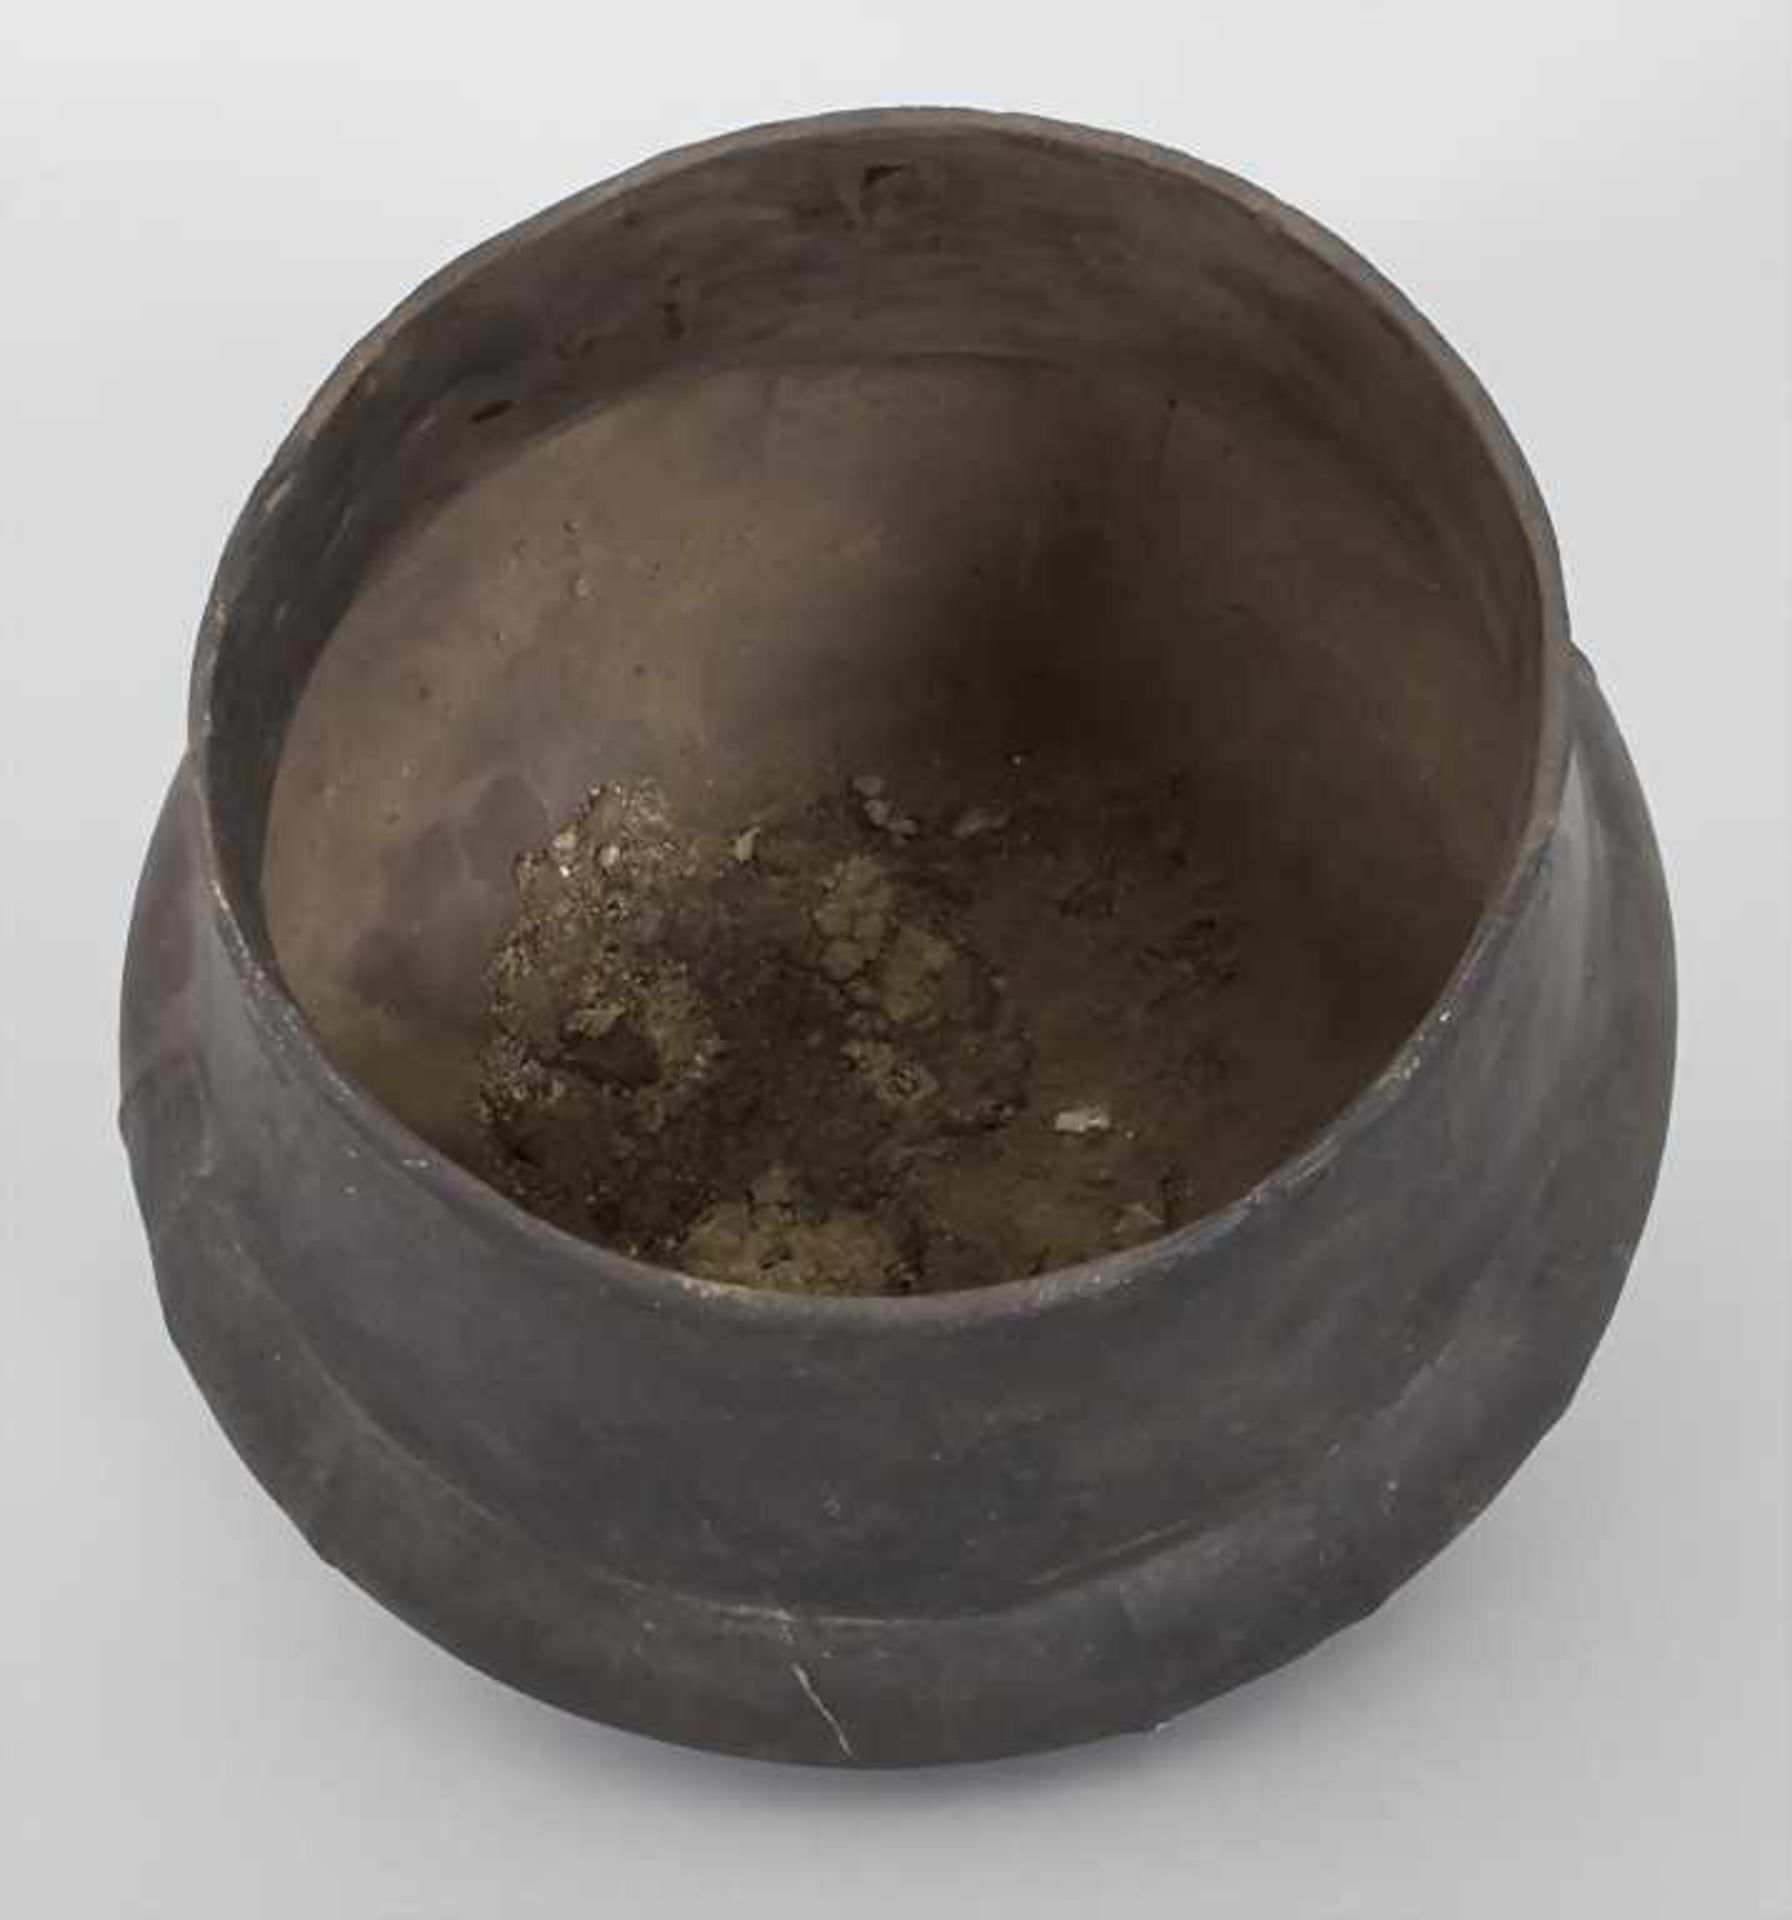 Bronzezeitliches Keramik-Gefäß / A Bronze Age ceramic vessel, Lausitzer Kultur, 9. - 6. Jh. v. Chr. - Image 5 of 6